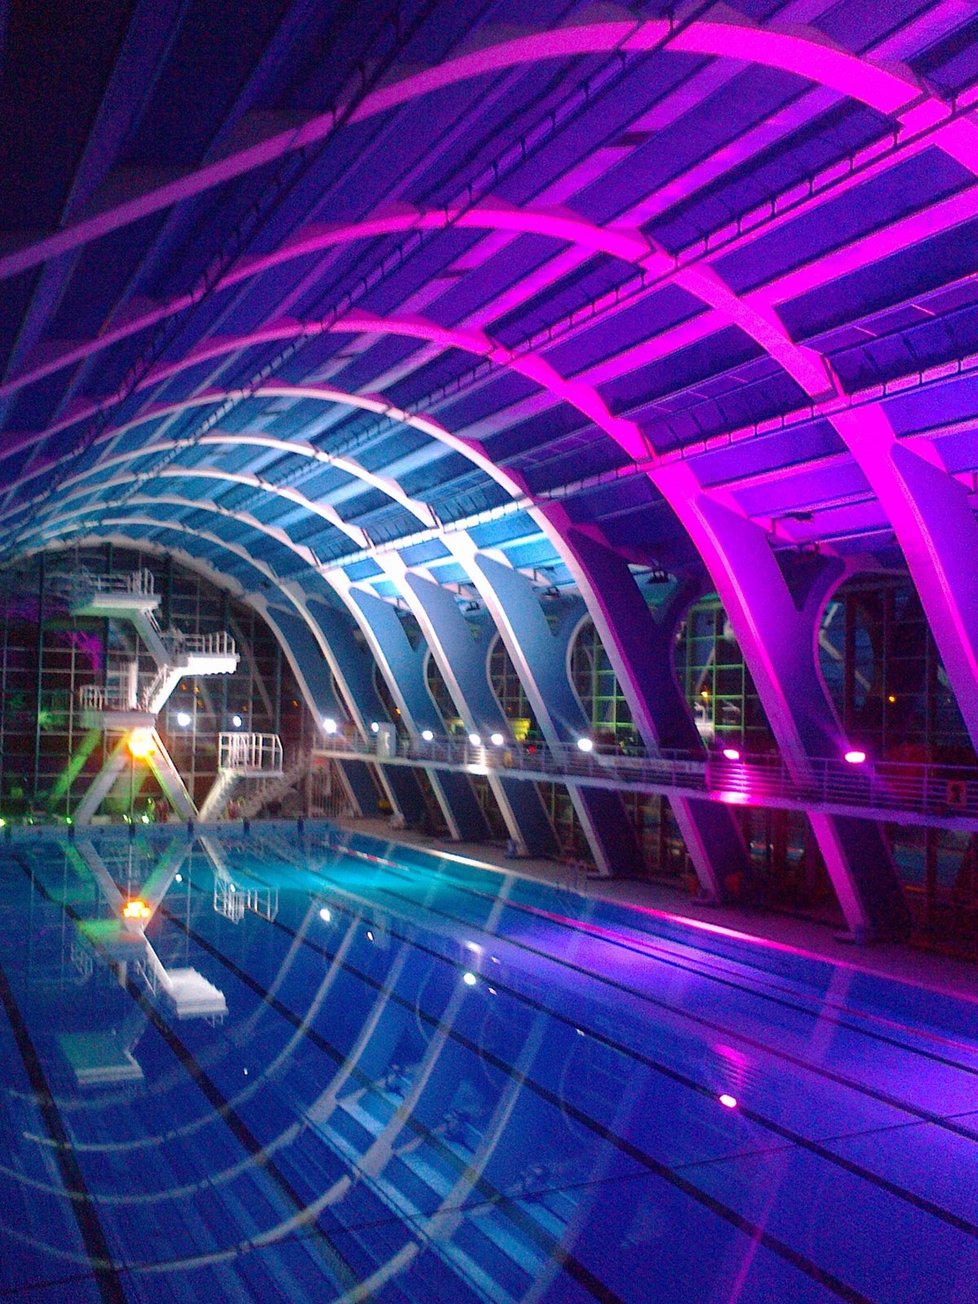 Vnitřní bazén se během oslav 50. výročí barevně rozsvítil.